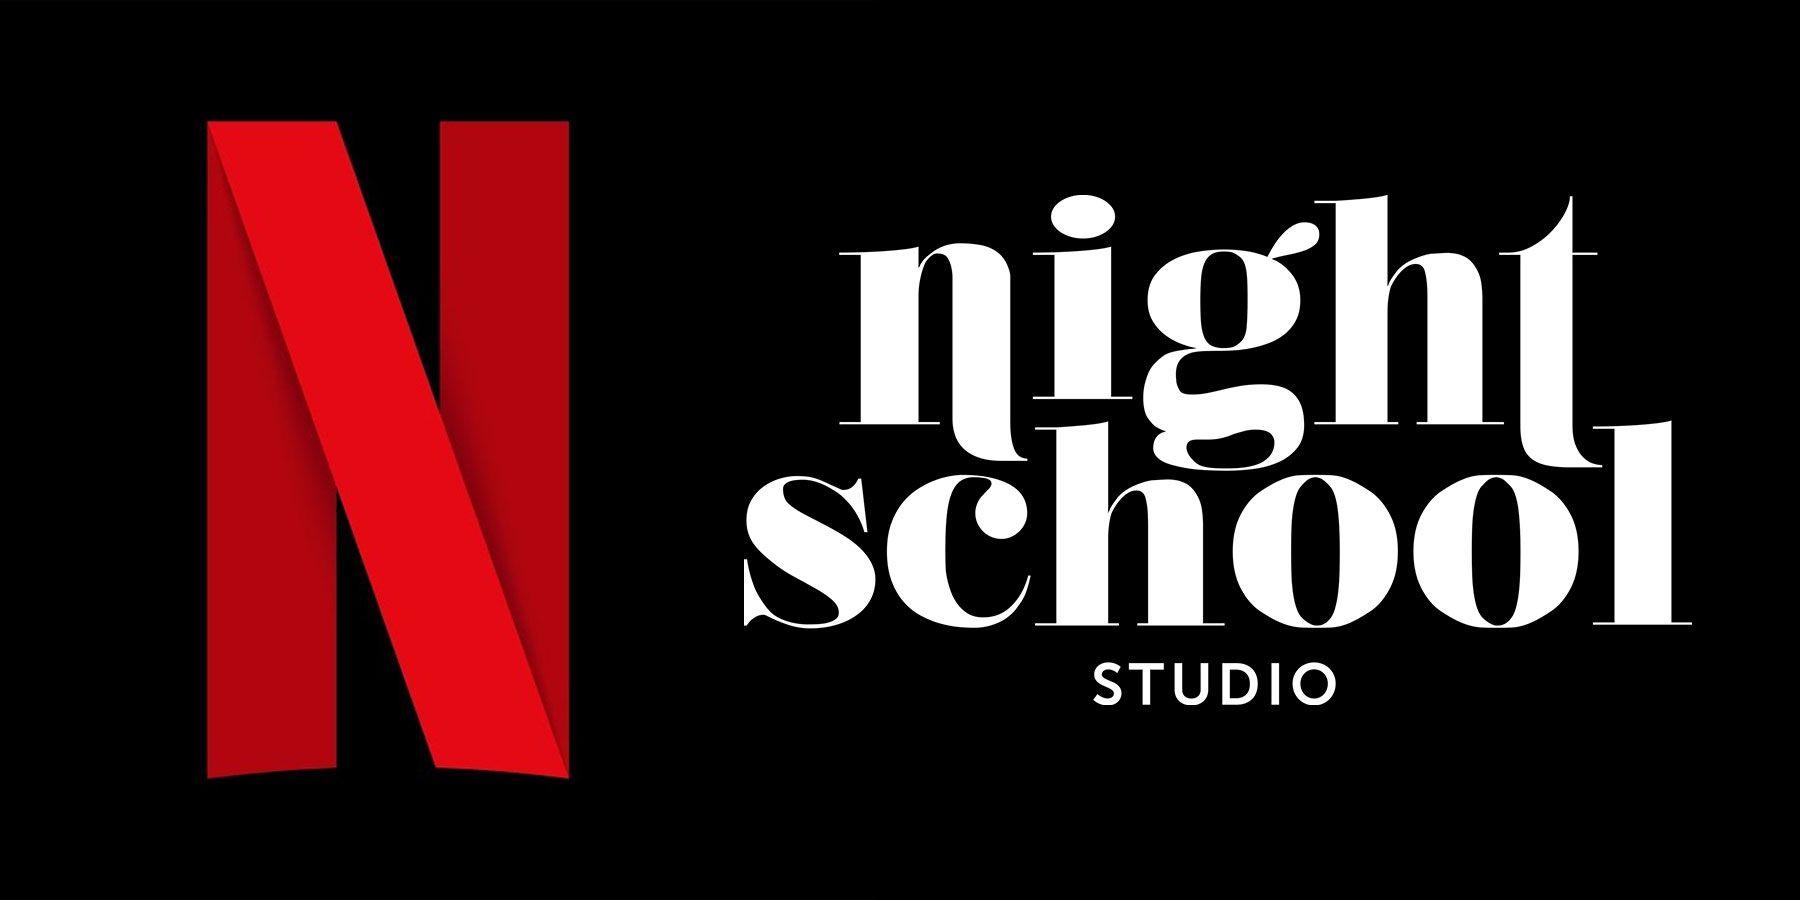 Nabycie Night School Studio przez Netflix to dobry znak dla ambicji związanych z streamingiem